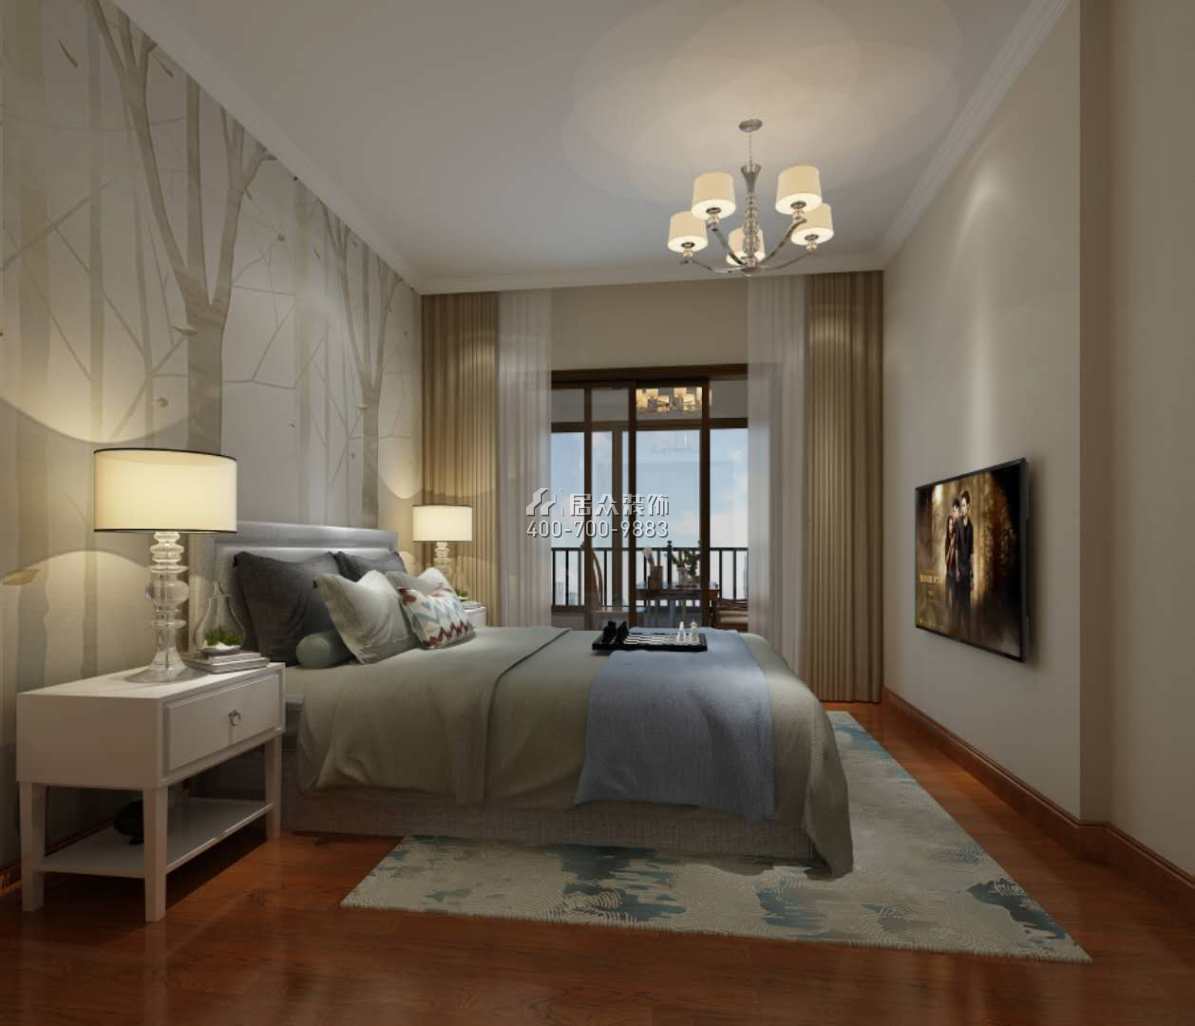 维港半岛177平方米欧式风格平层户型卧室装修效果图